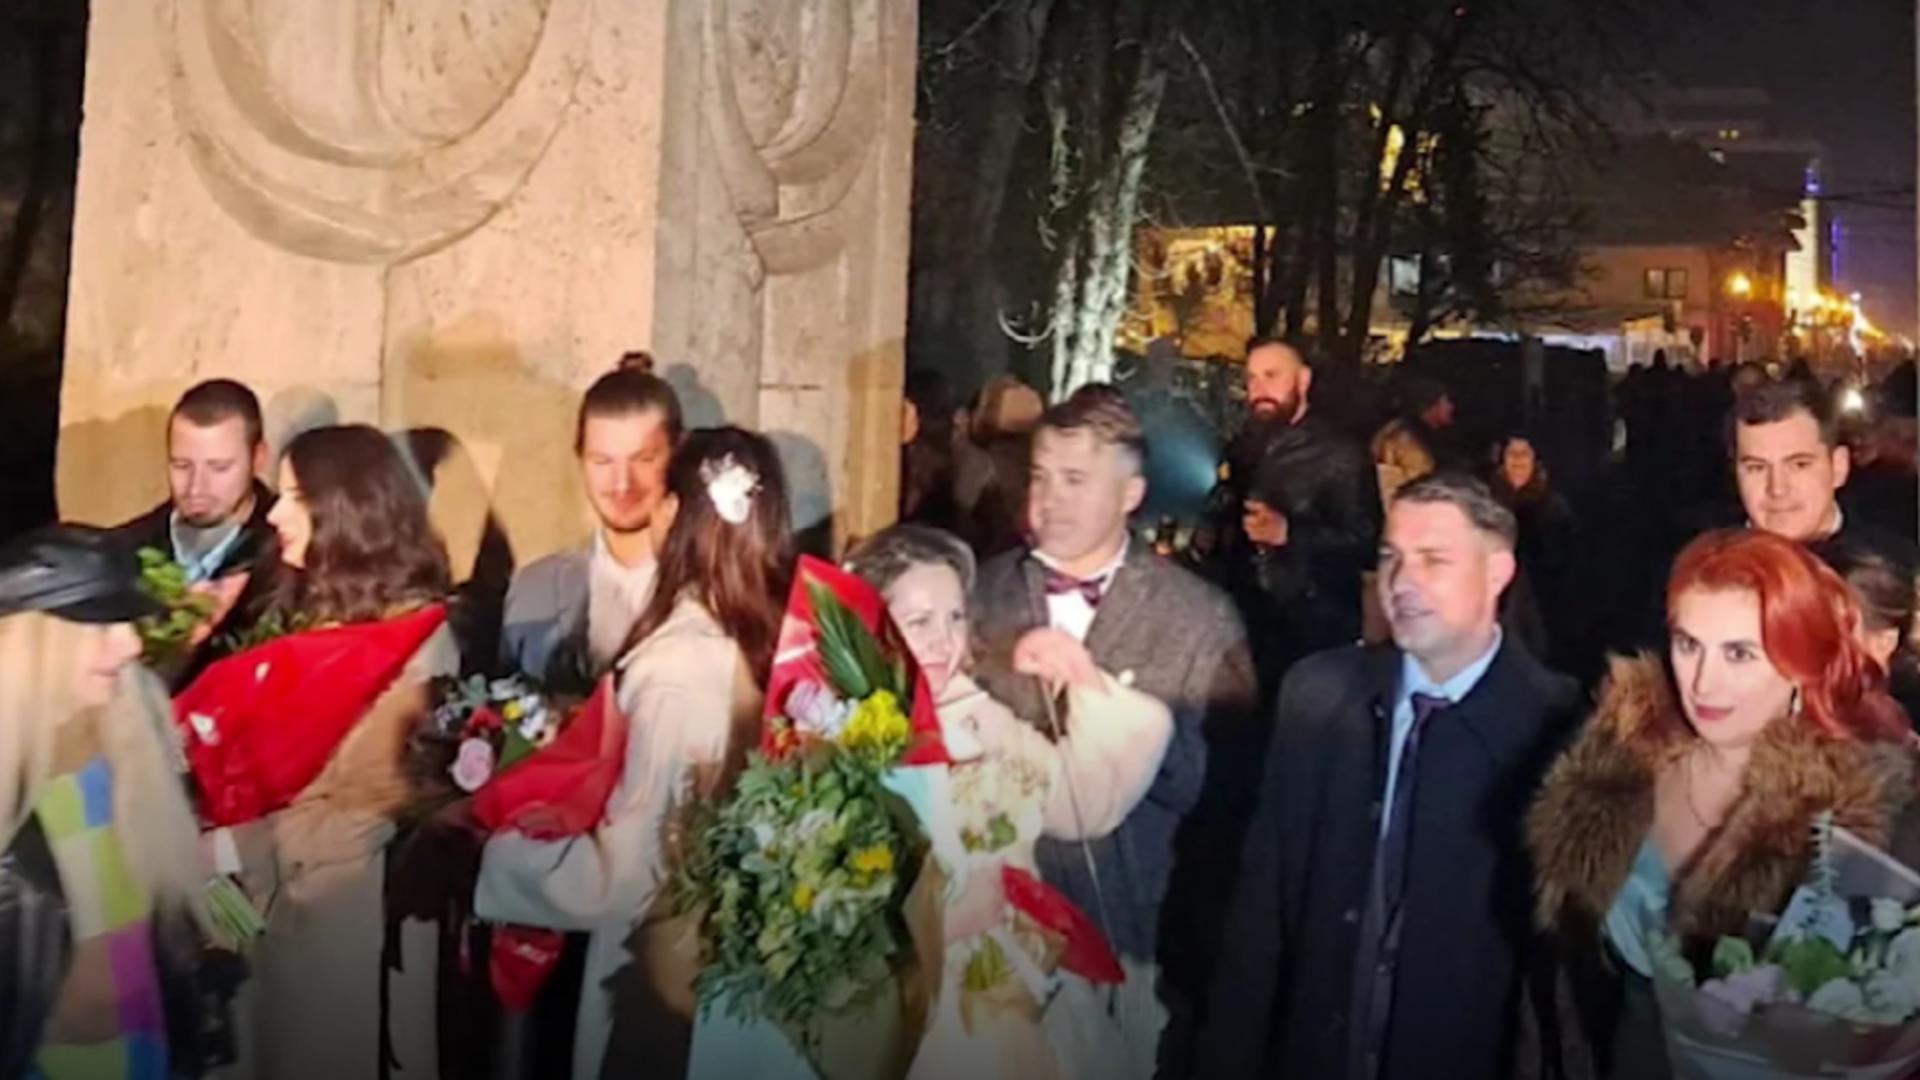 10 cupluri s-au căsătorit de Revelion. Momente emoționante la Poarta Sărutului din Târgu Jiu